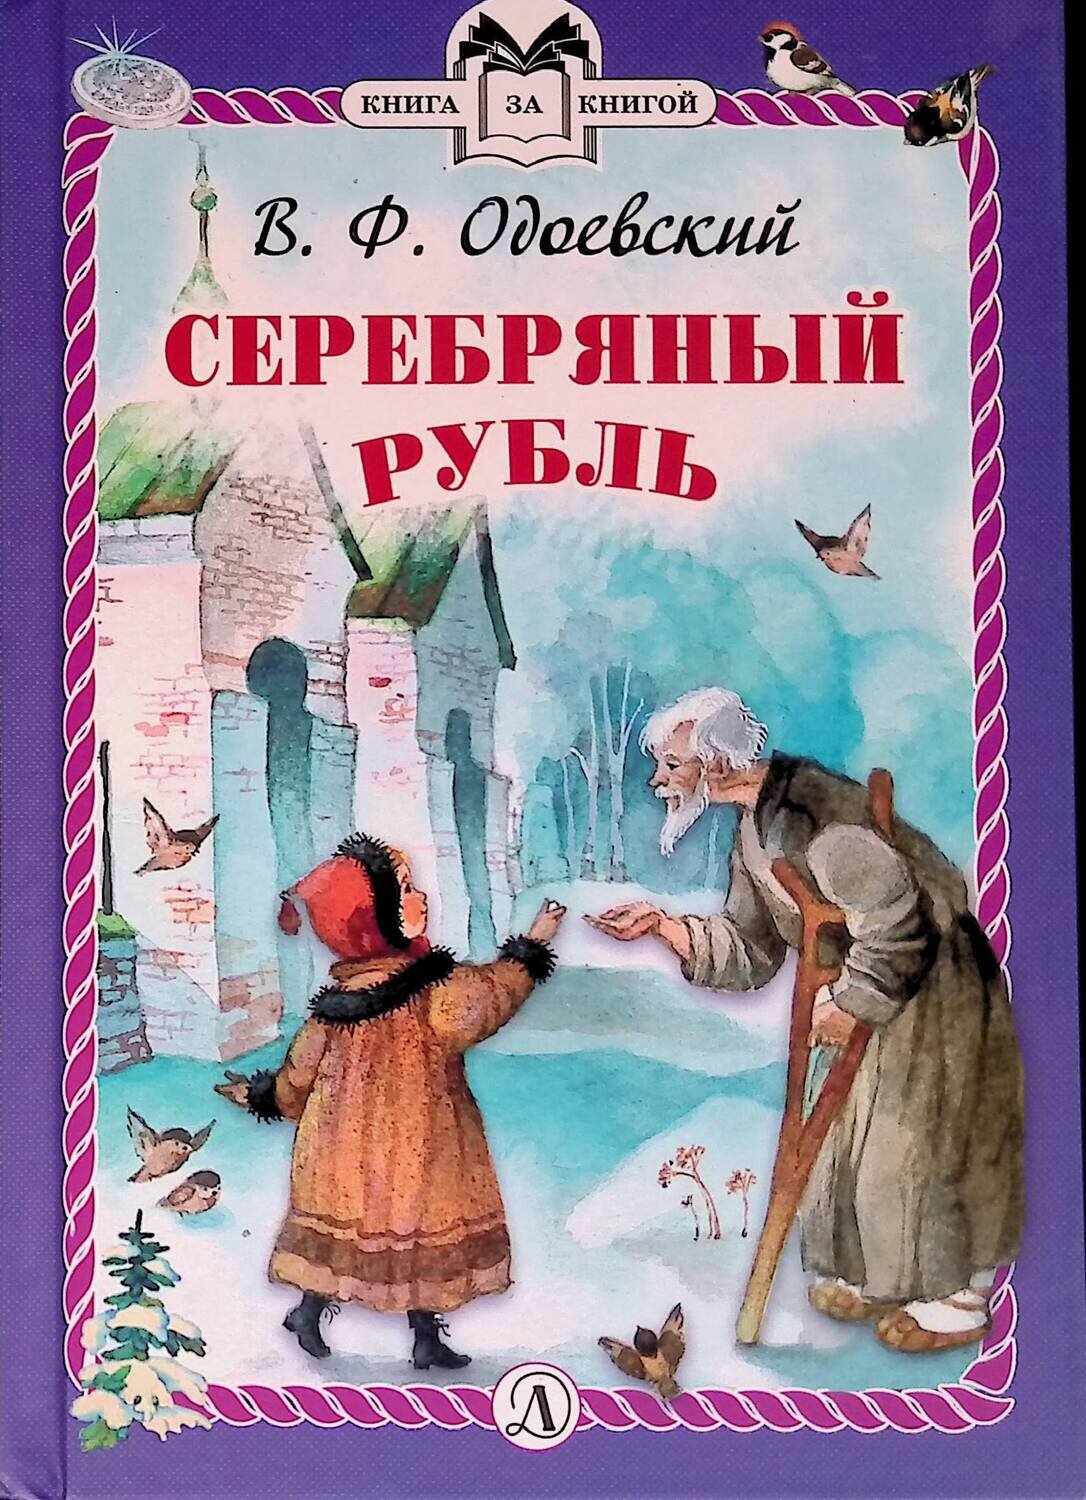 Серебряный рубль; Одоевский Владимир Федорович